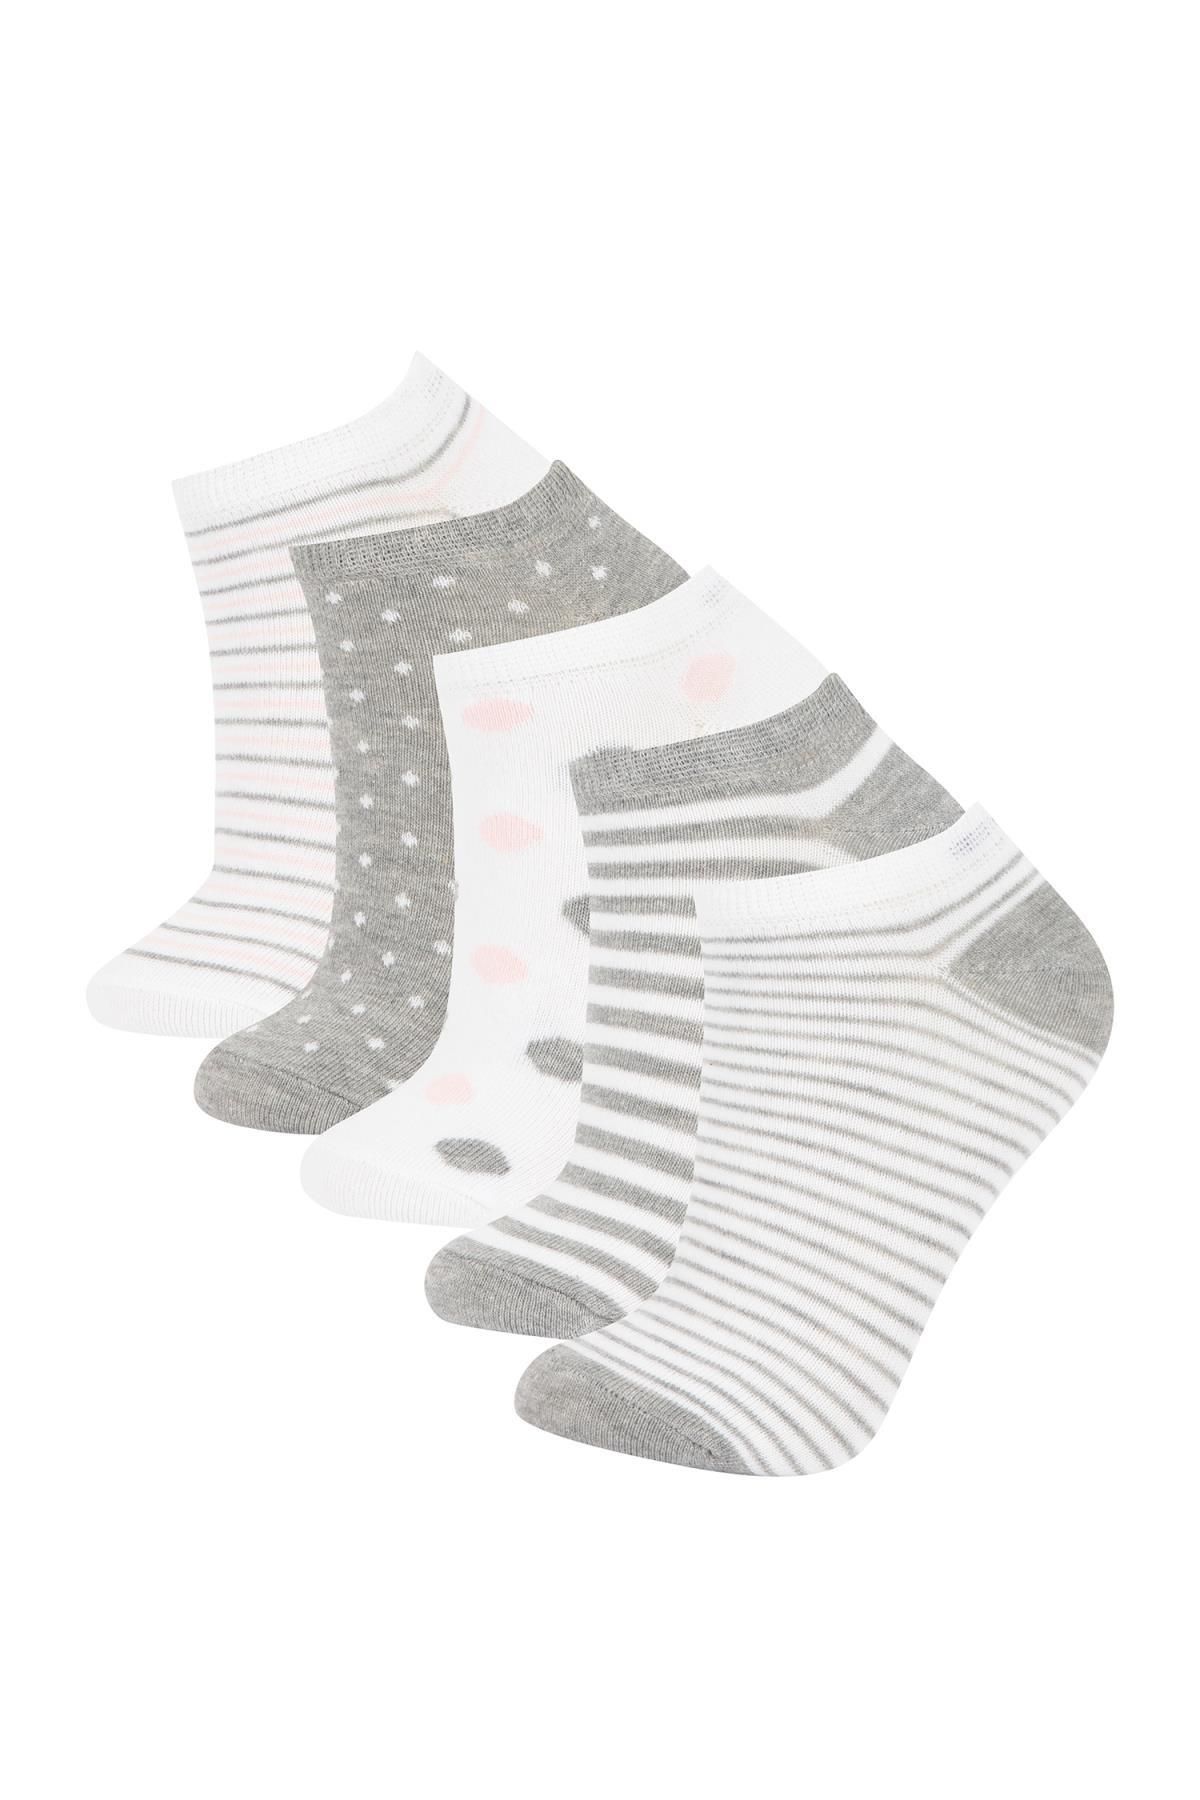 Defacto Kadın 5li Pamuklu Patik Çorap V9712azns